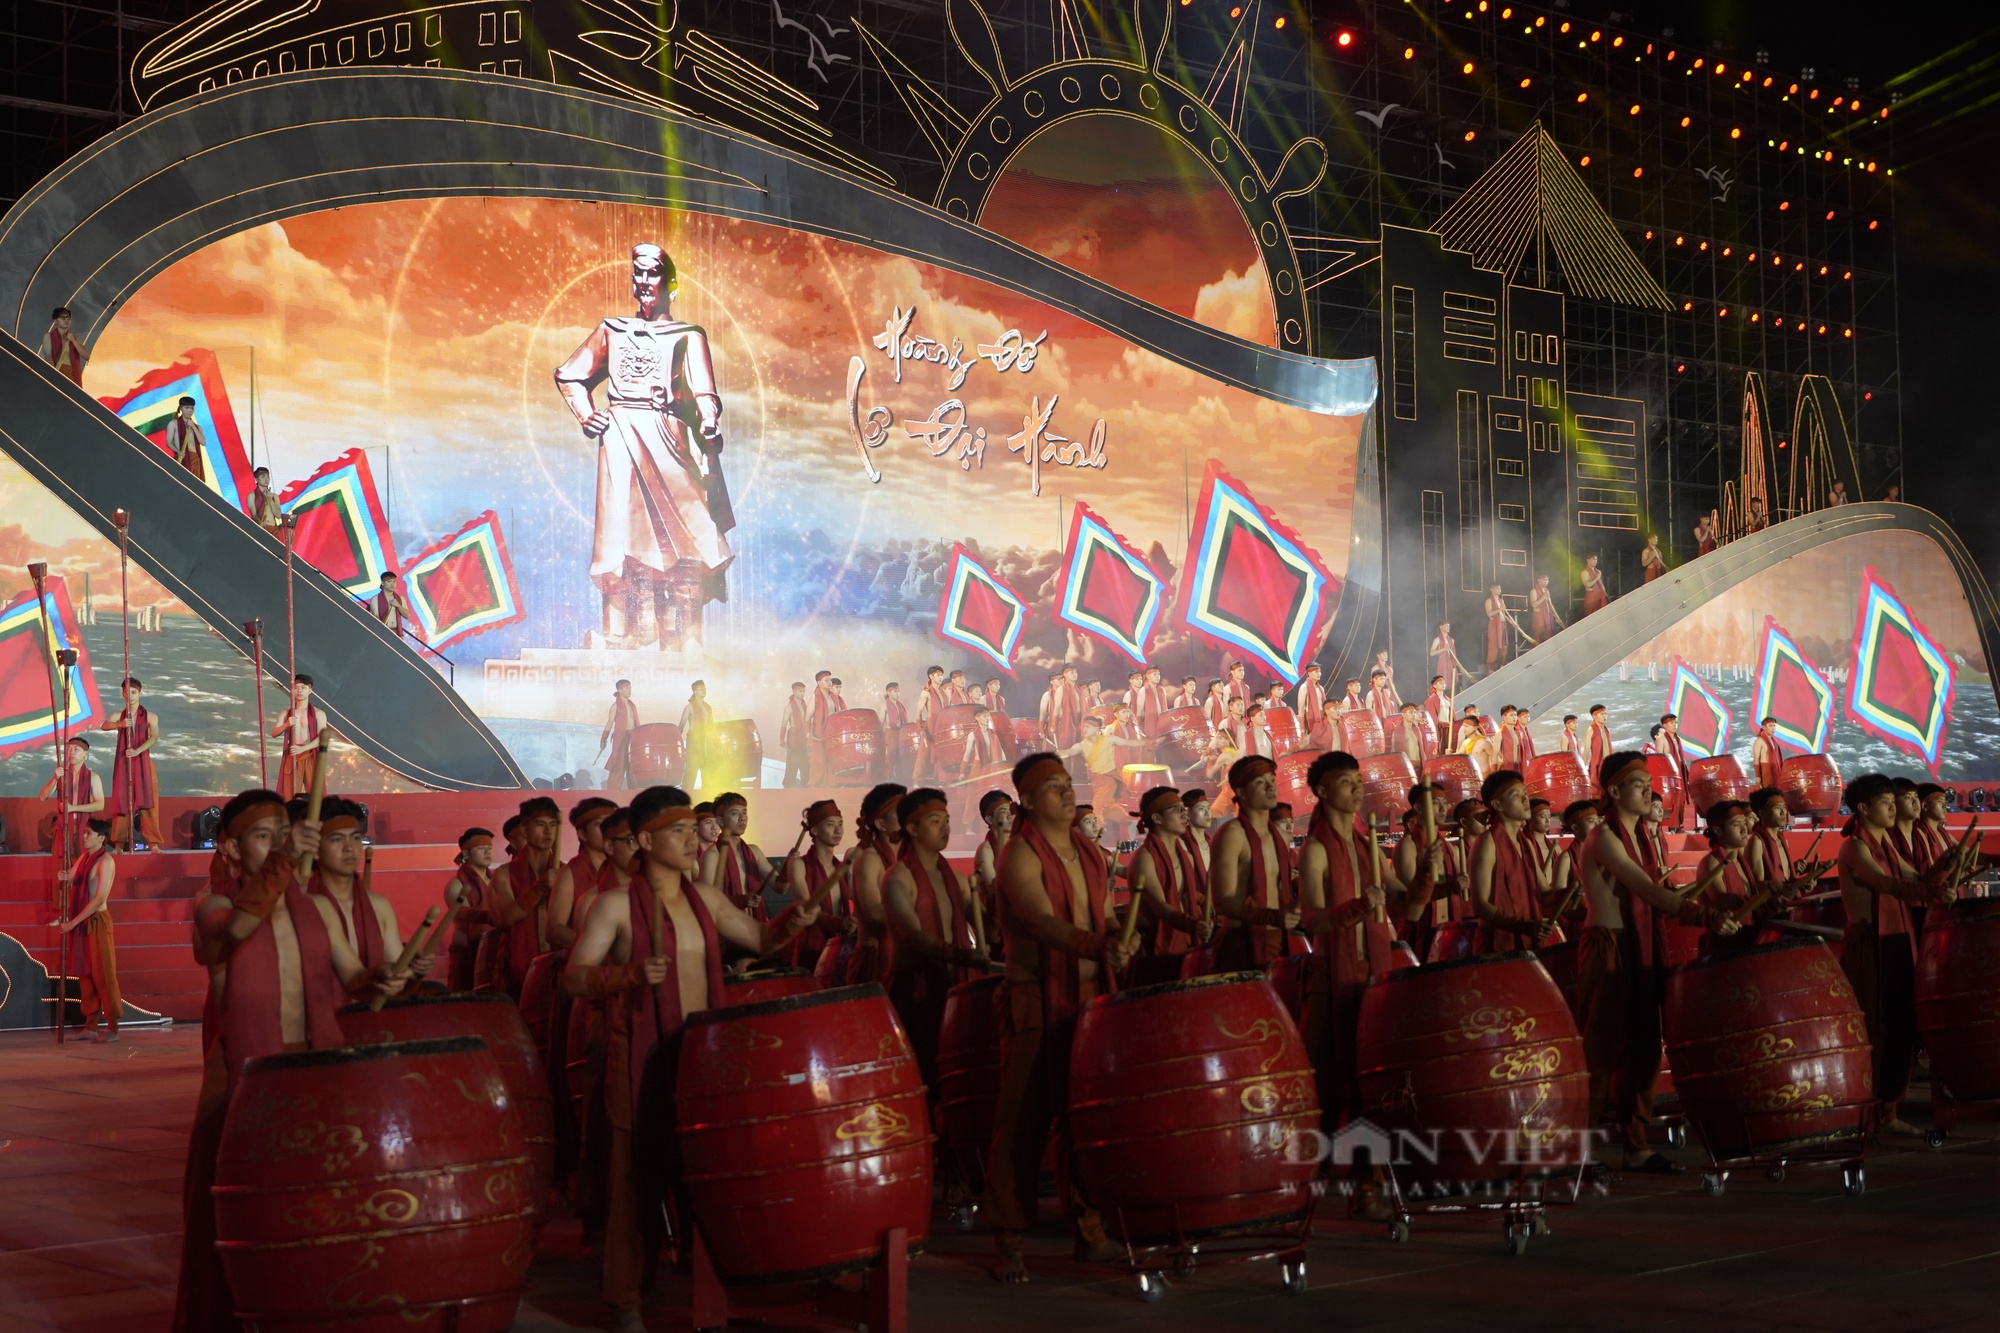 Mãn nhãn với màn trống hội lớn nhất Việt Nam trong lễ kỷ niệm 60 năm Ngày thành lập tỉnh Quảng Ninh - Ảnh 10.